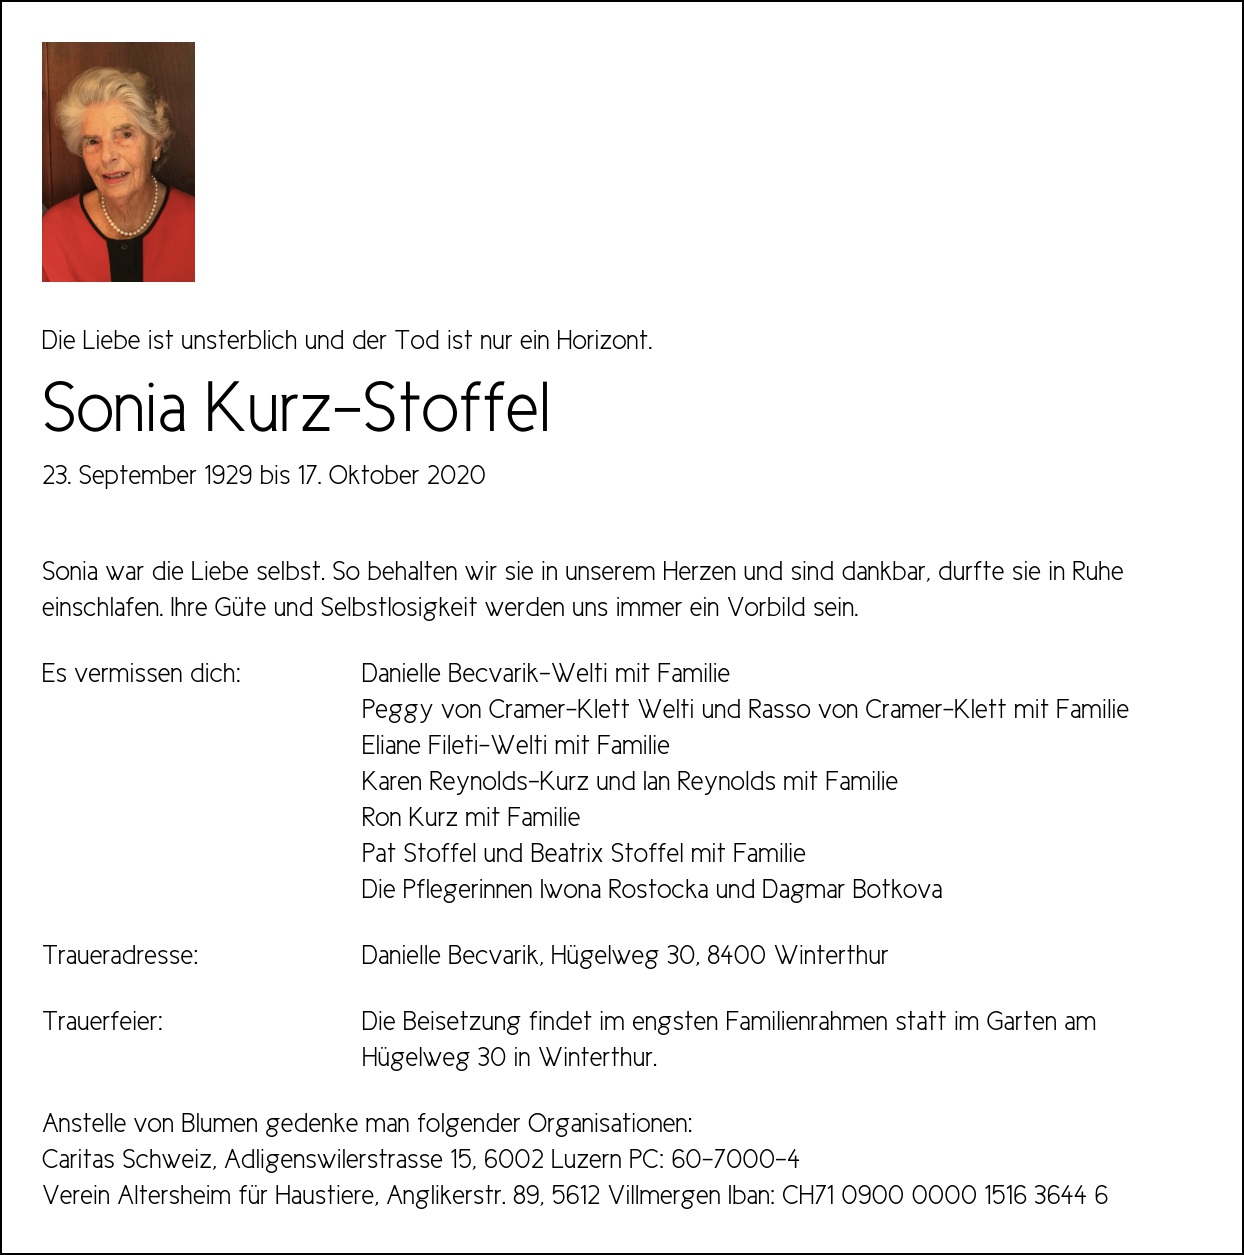 Sonia Kurz